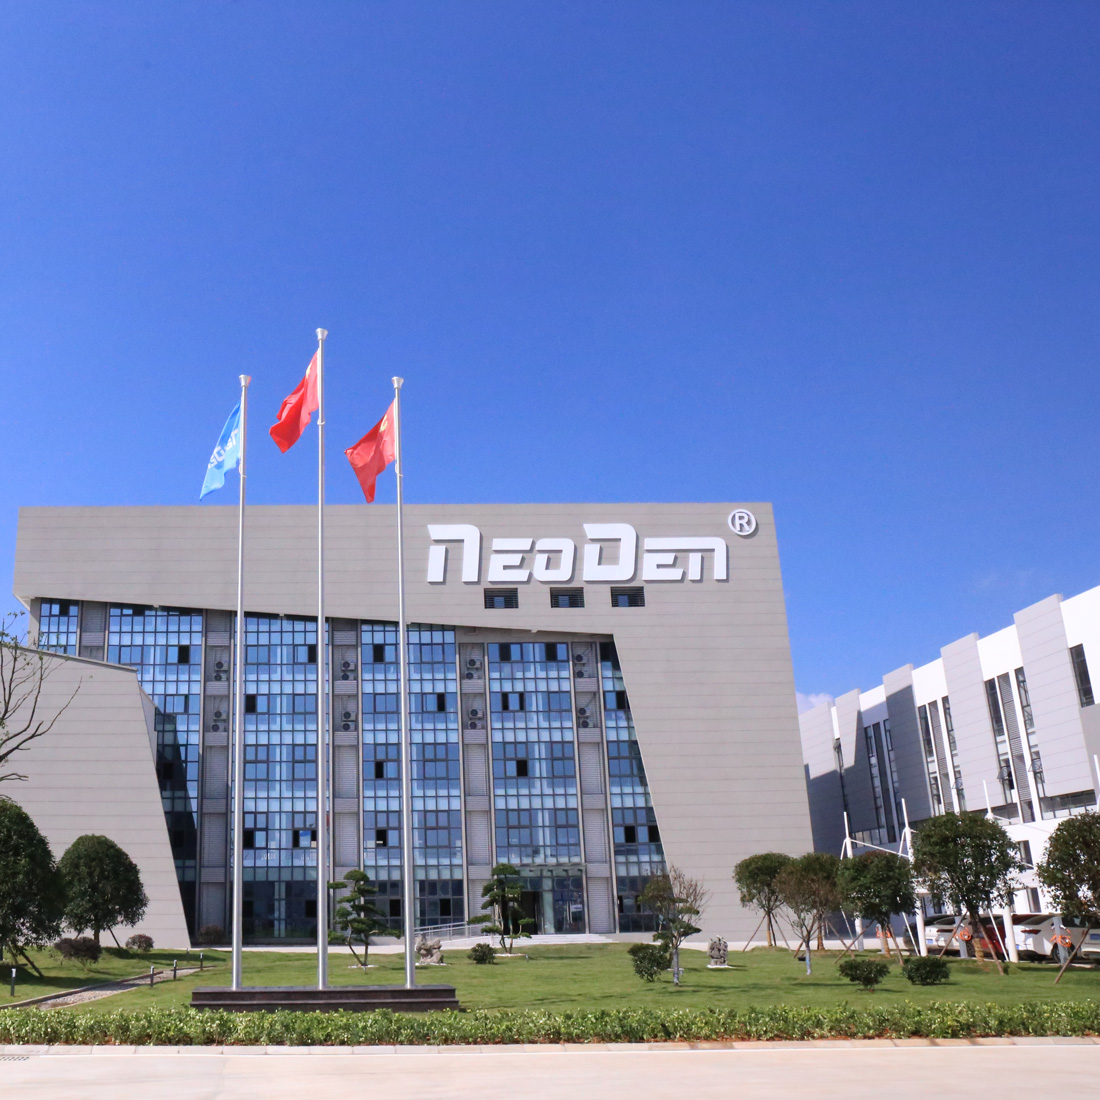 تنها نام تجاری SMT چینی که در ویکی پدیا فهرست شده است——NeoDen!